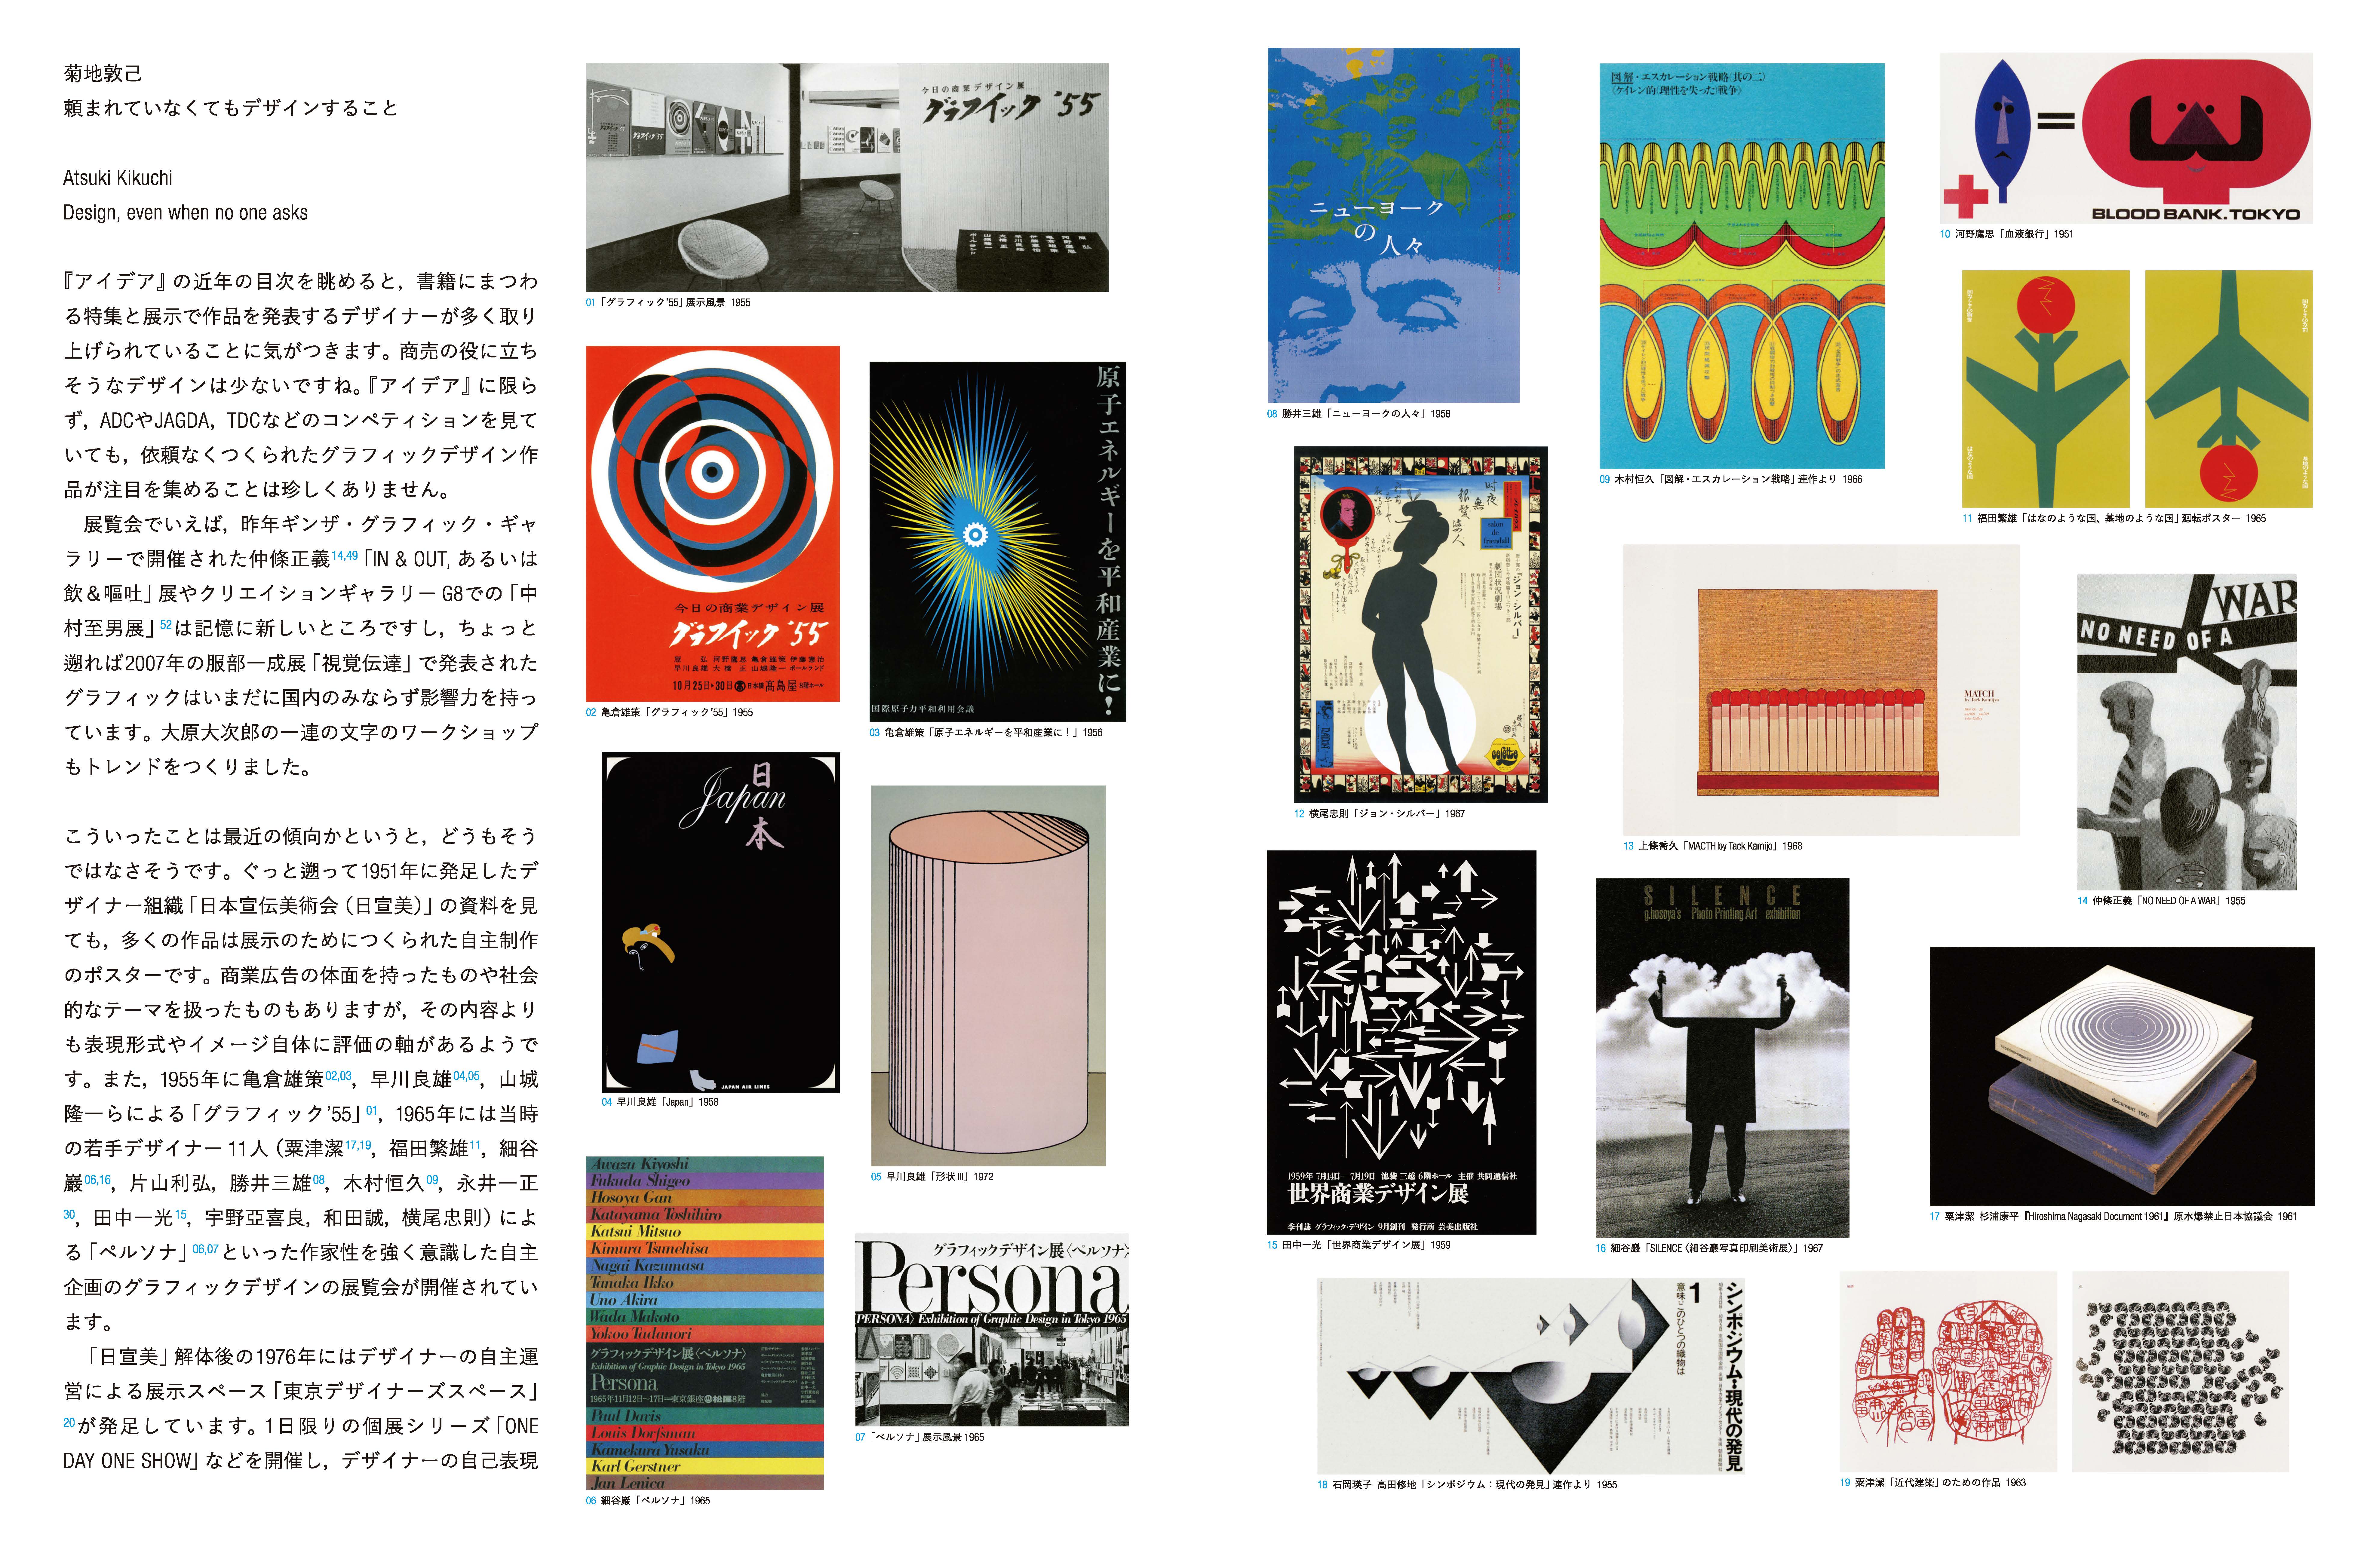 Sato Koichi ggg Books 13 Three Gee Books world of graphic design series 13 